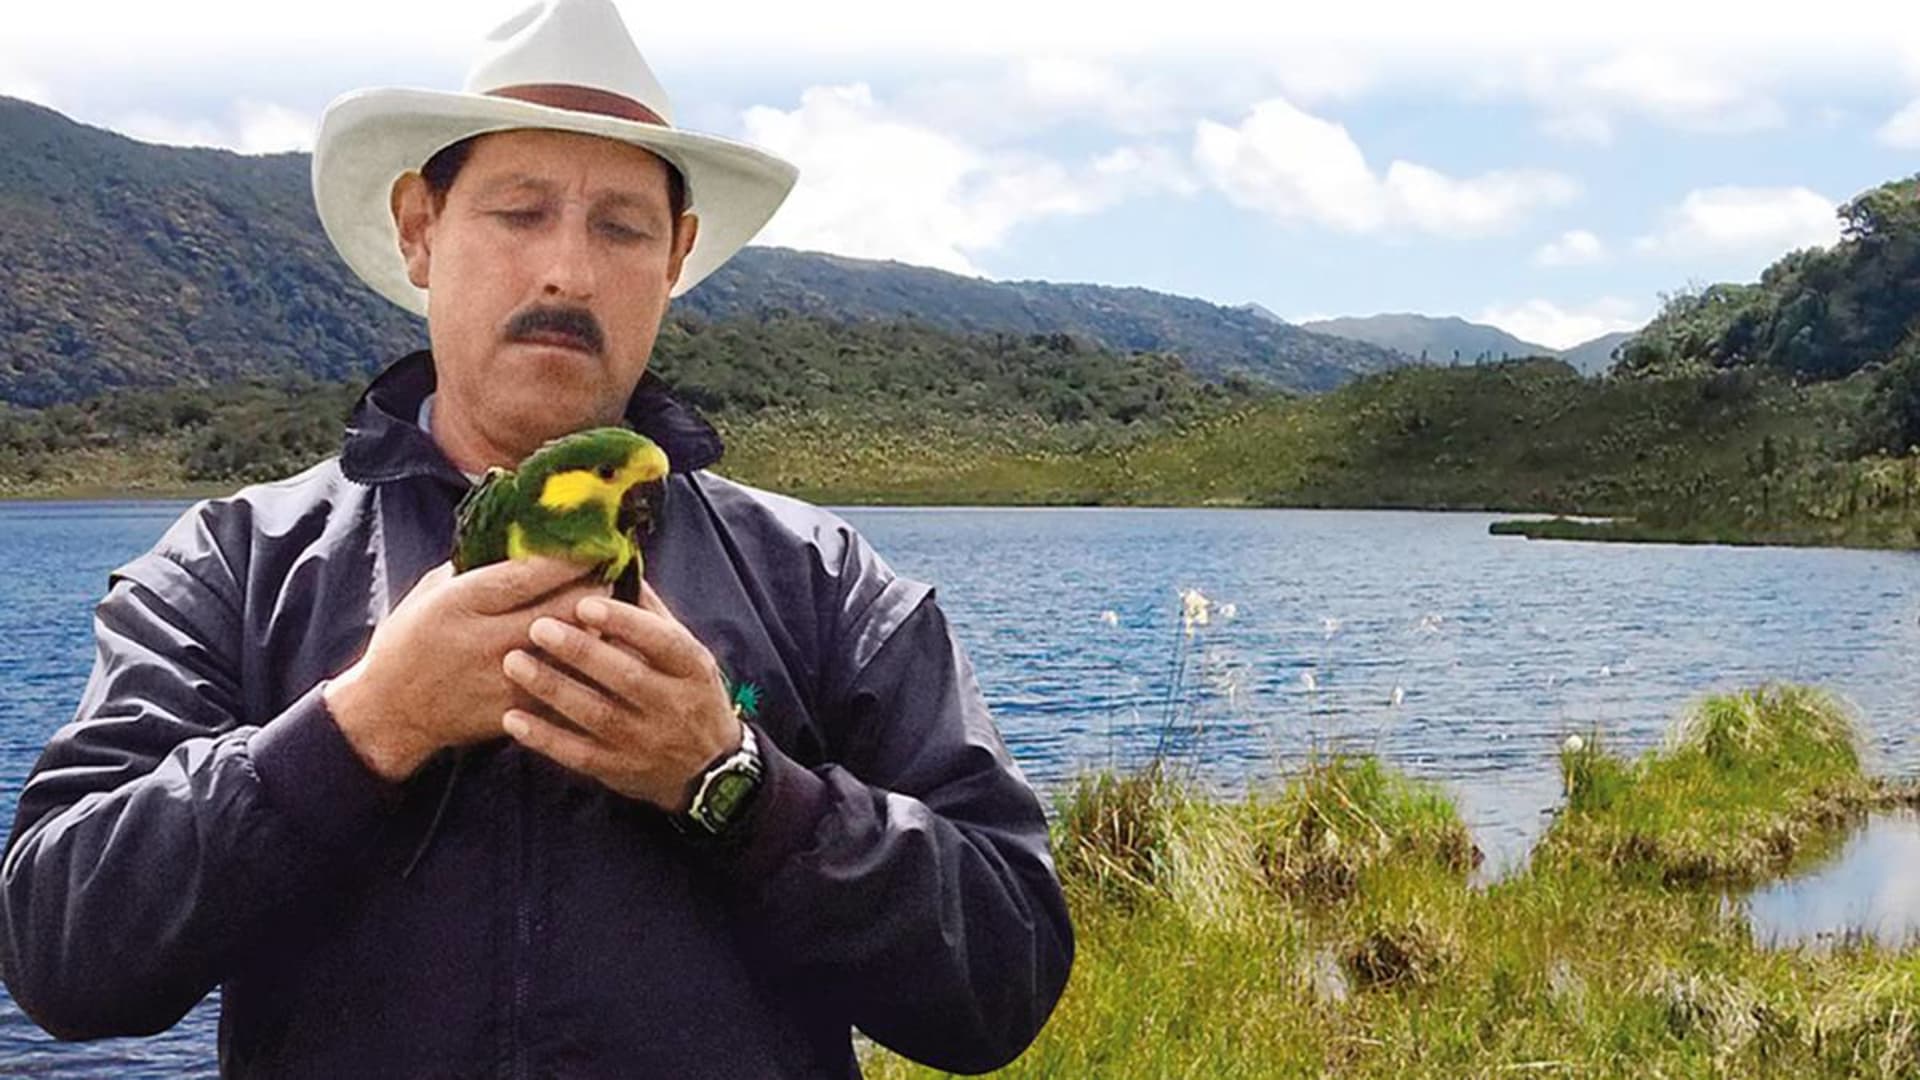 Gonzalo Cardona Molina patřil mezi významné postavy ochrany přírody v Kolumbii. Zdroj: ProAves